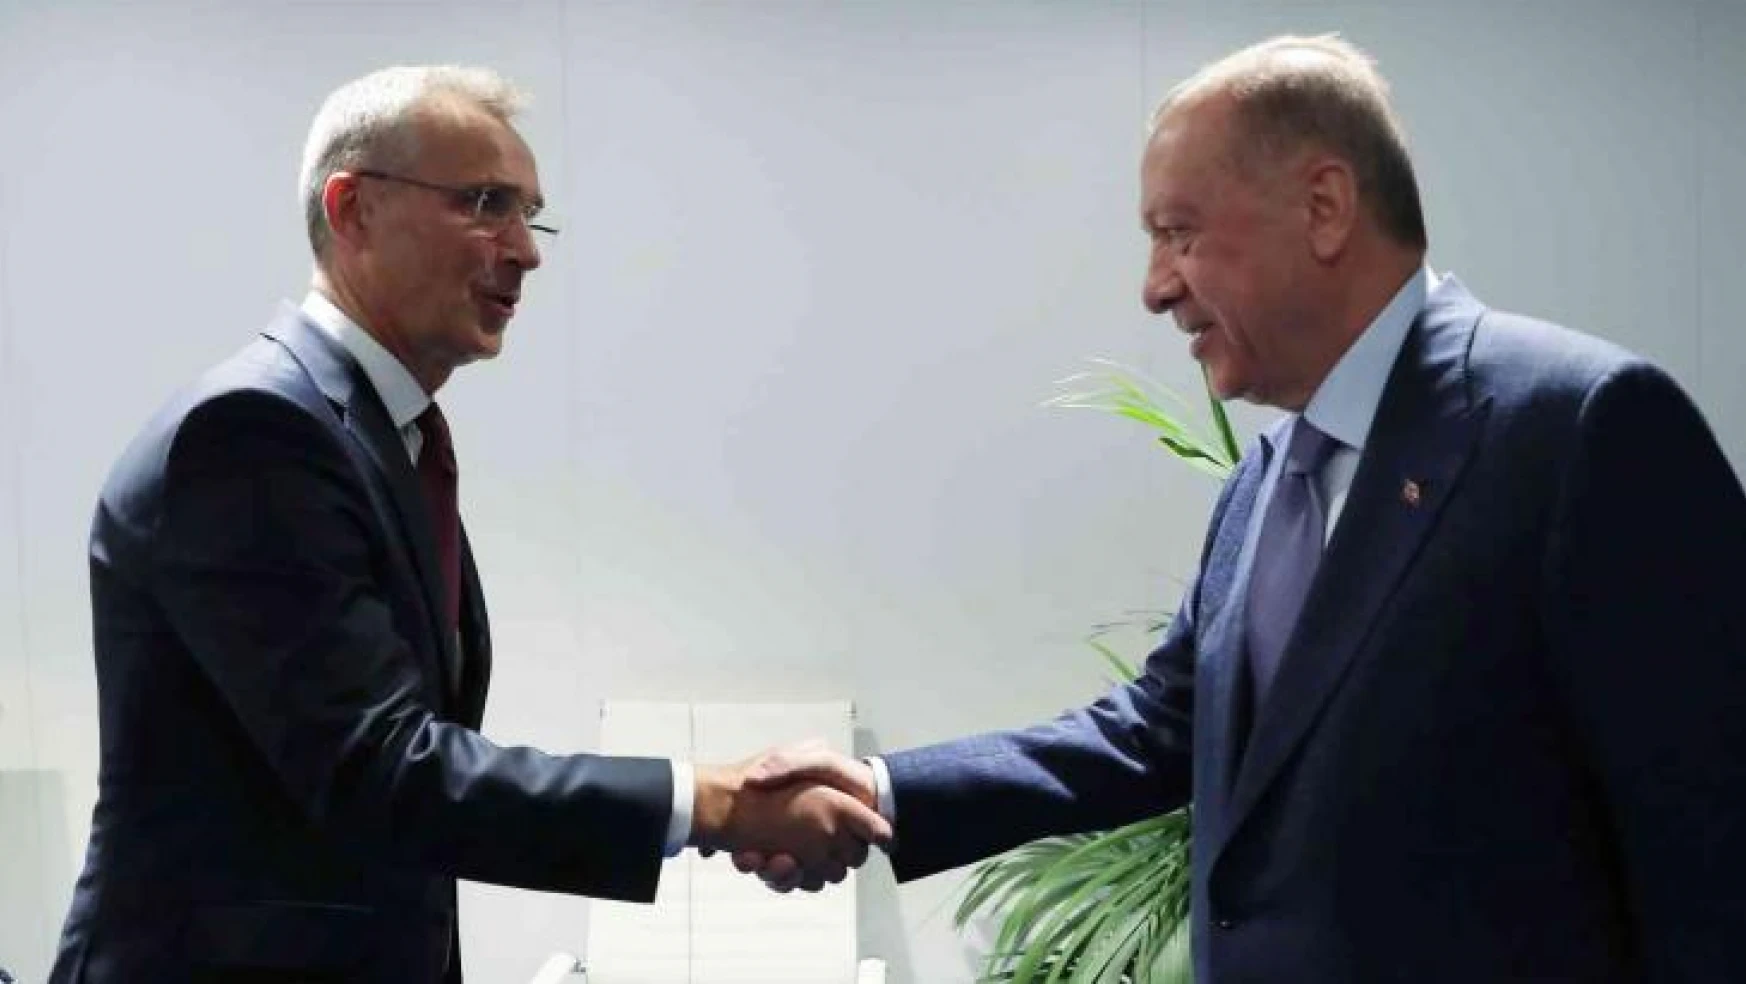 Türkiye-İsveç-Finlandiya-NATO görüşmesi Madrid'de başladı